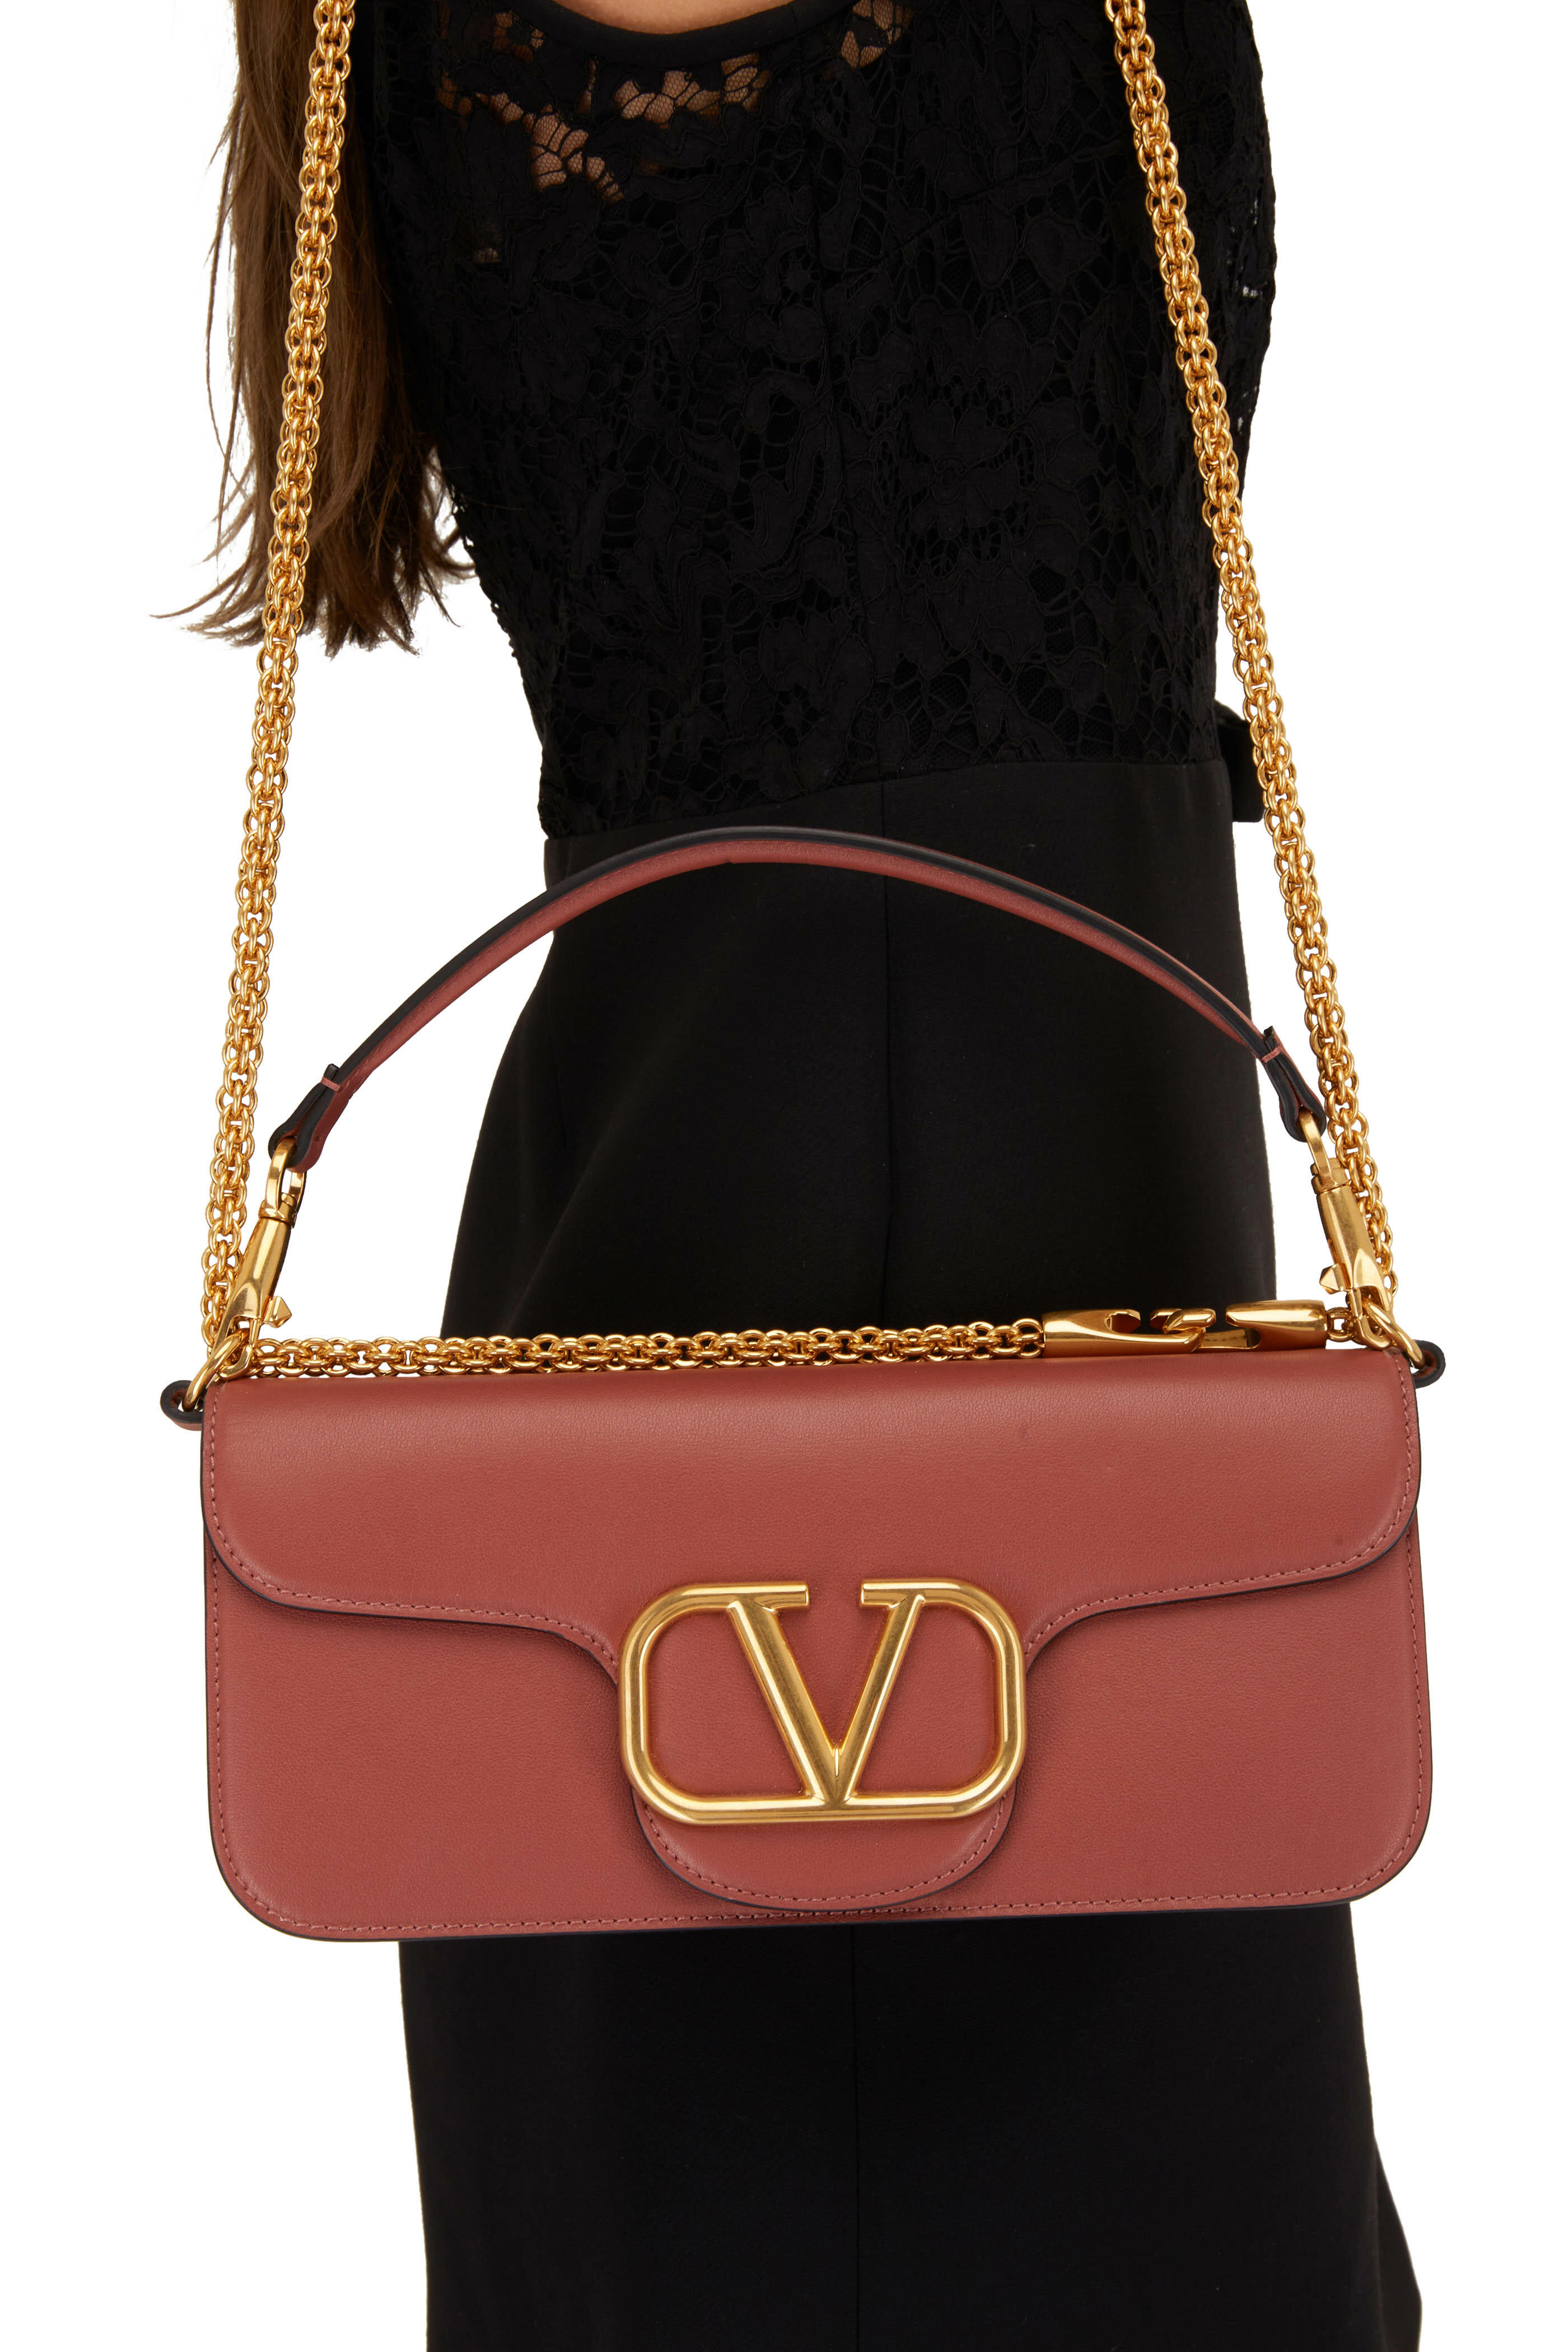 Valentino Garavani mini VLogo leather crossbody bag - Neutrals